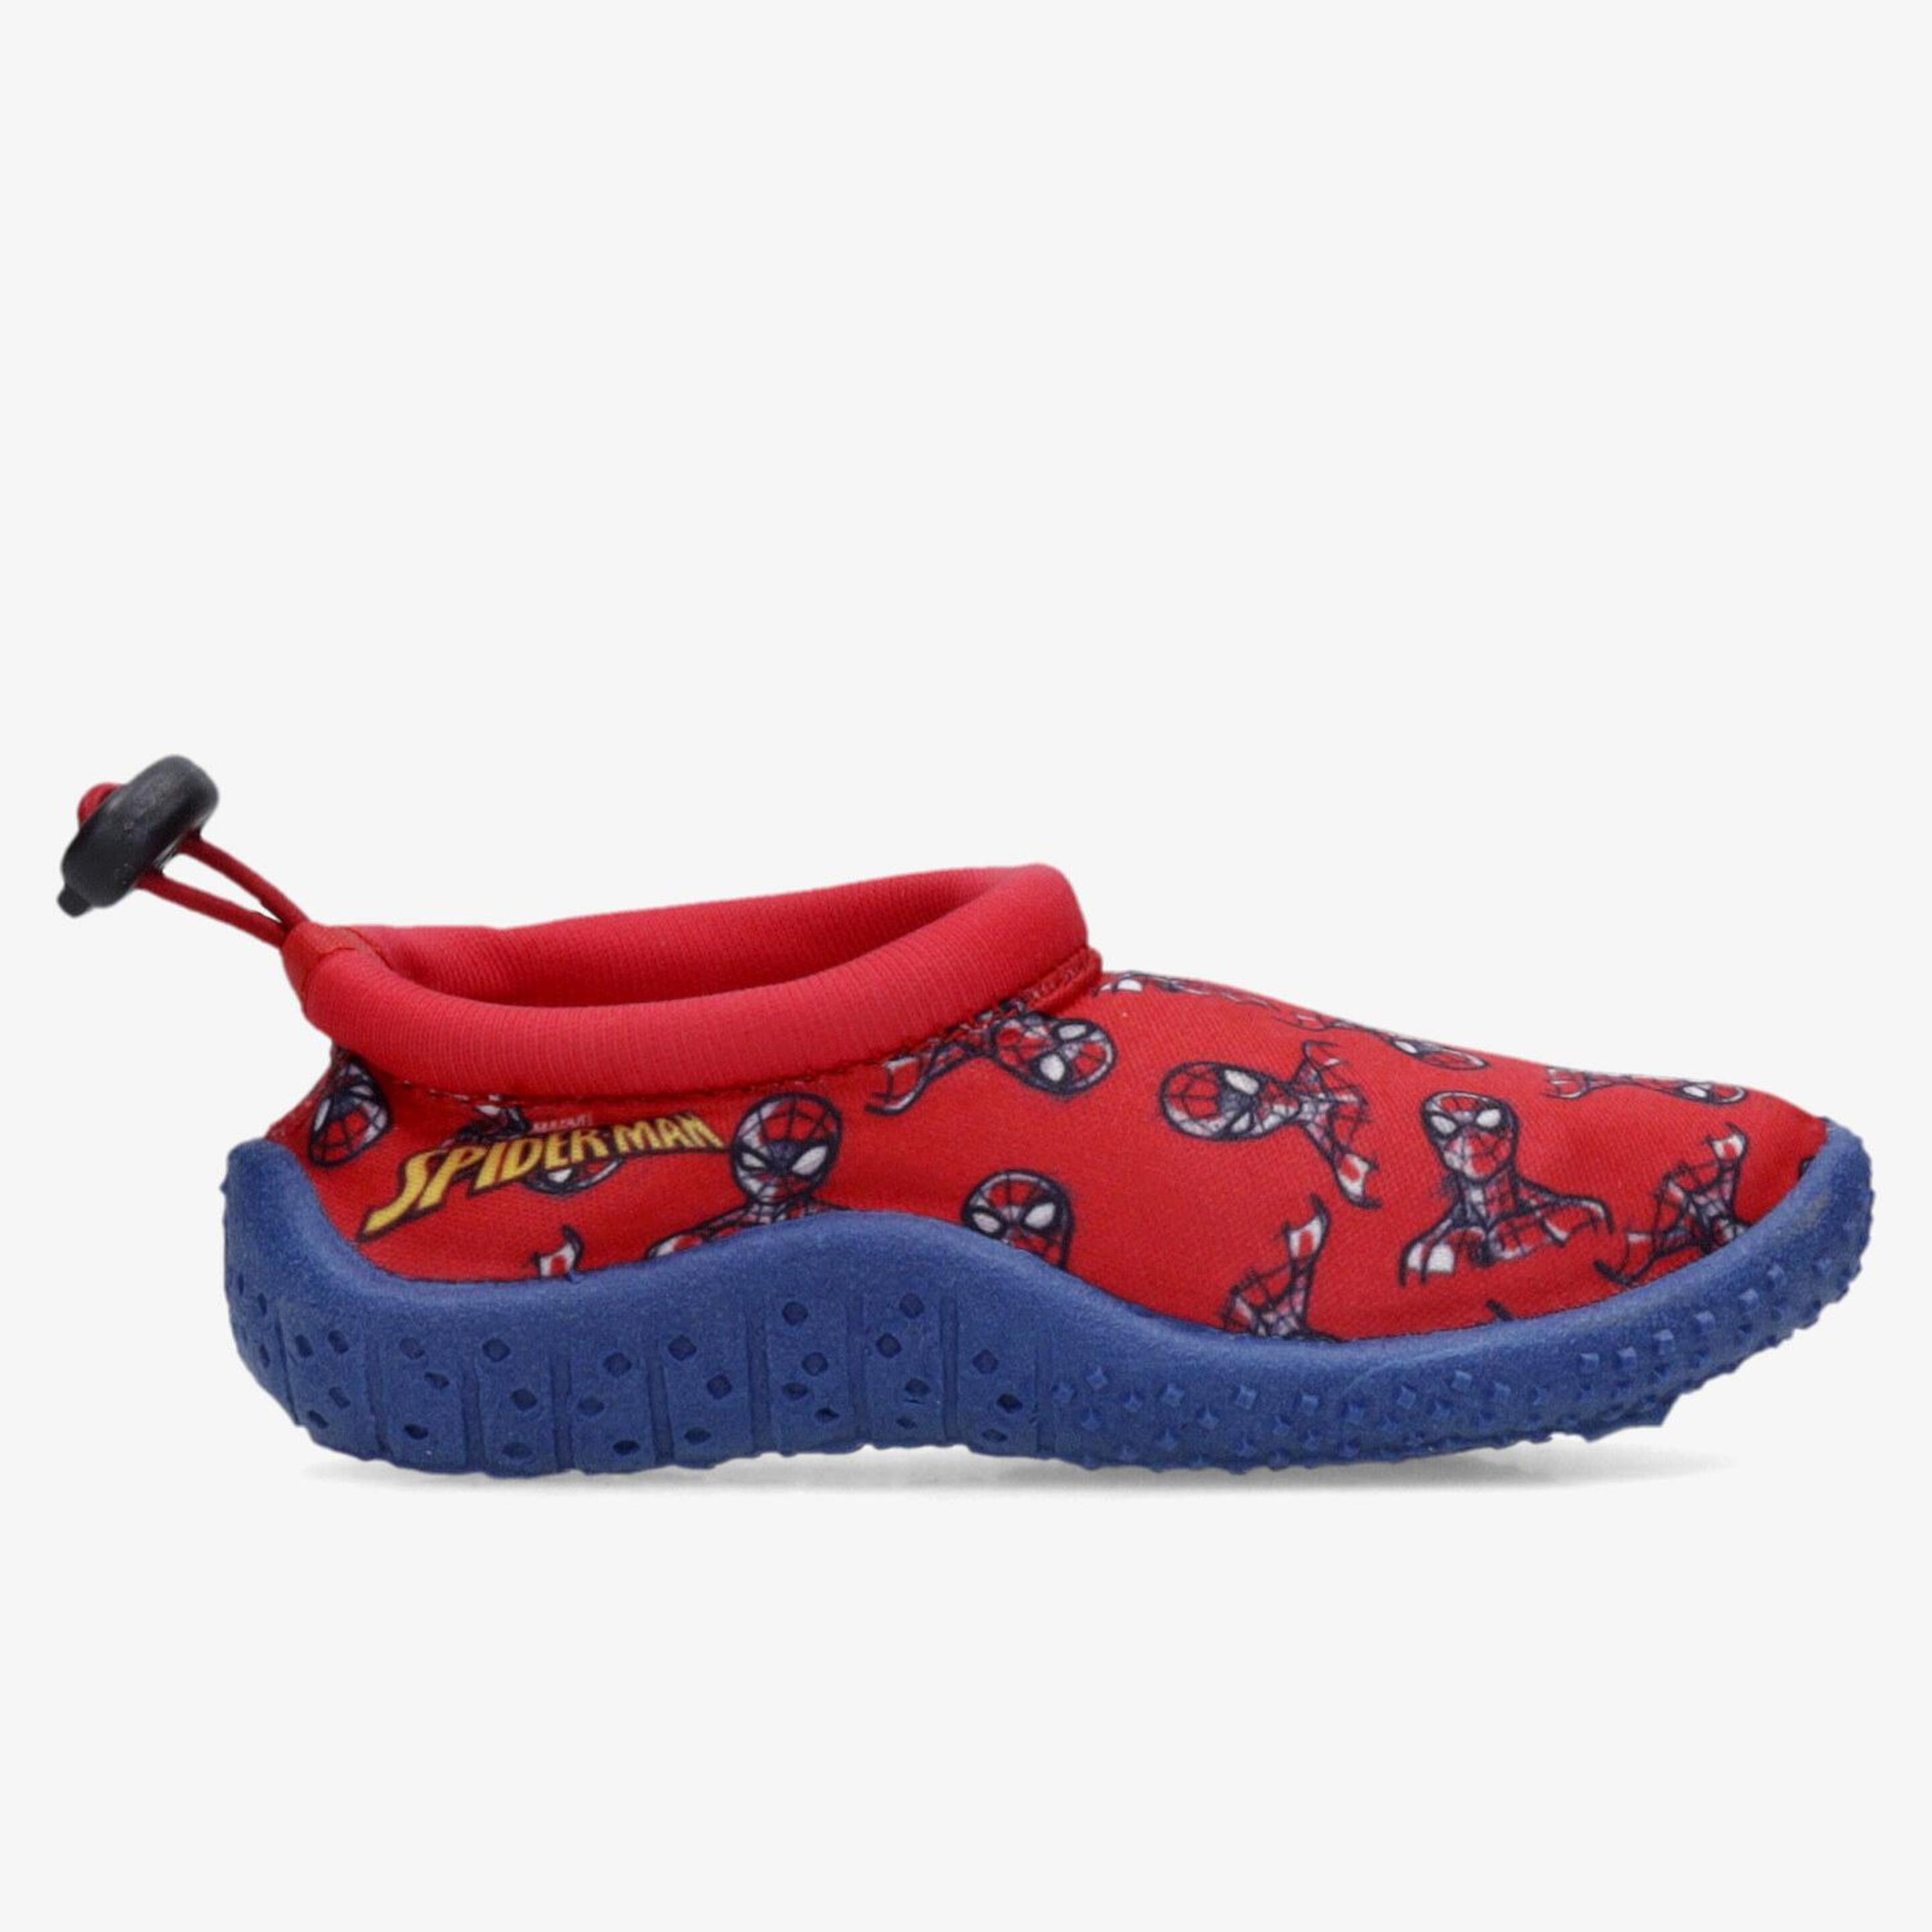 Sapatos Spiderman - rojo - Sapatos Água Menino